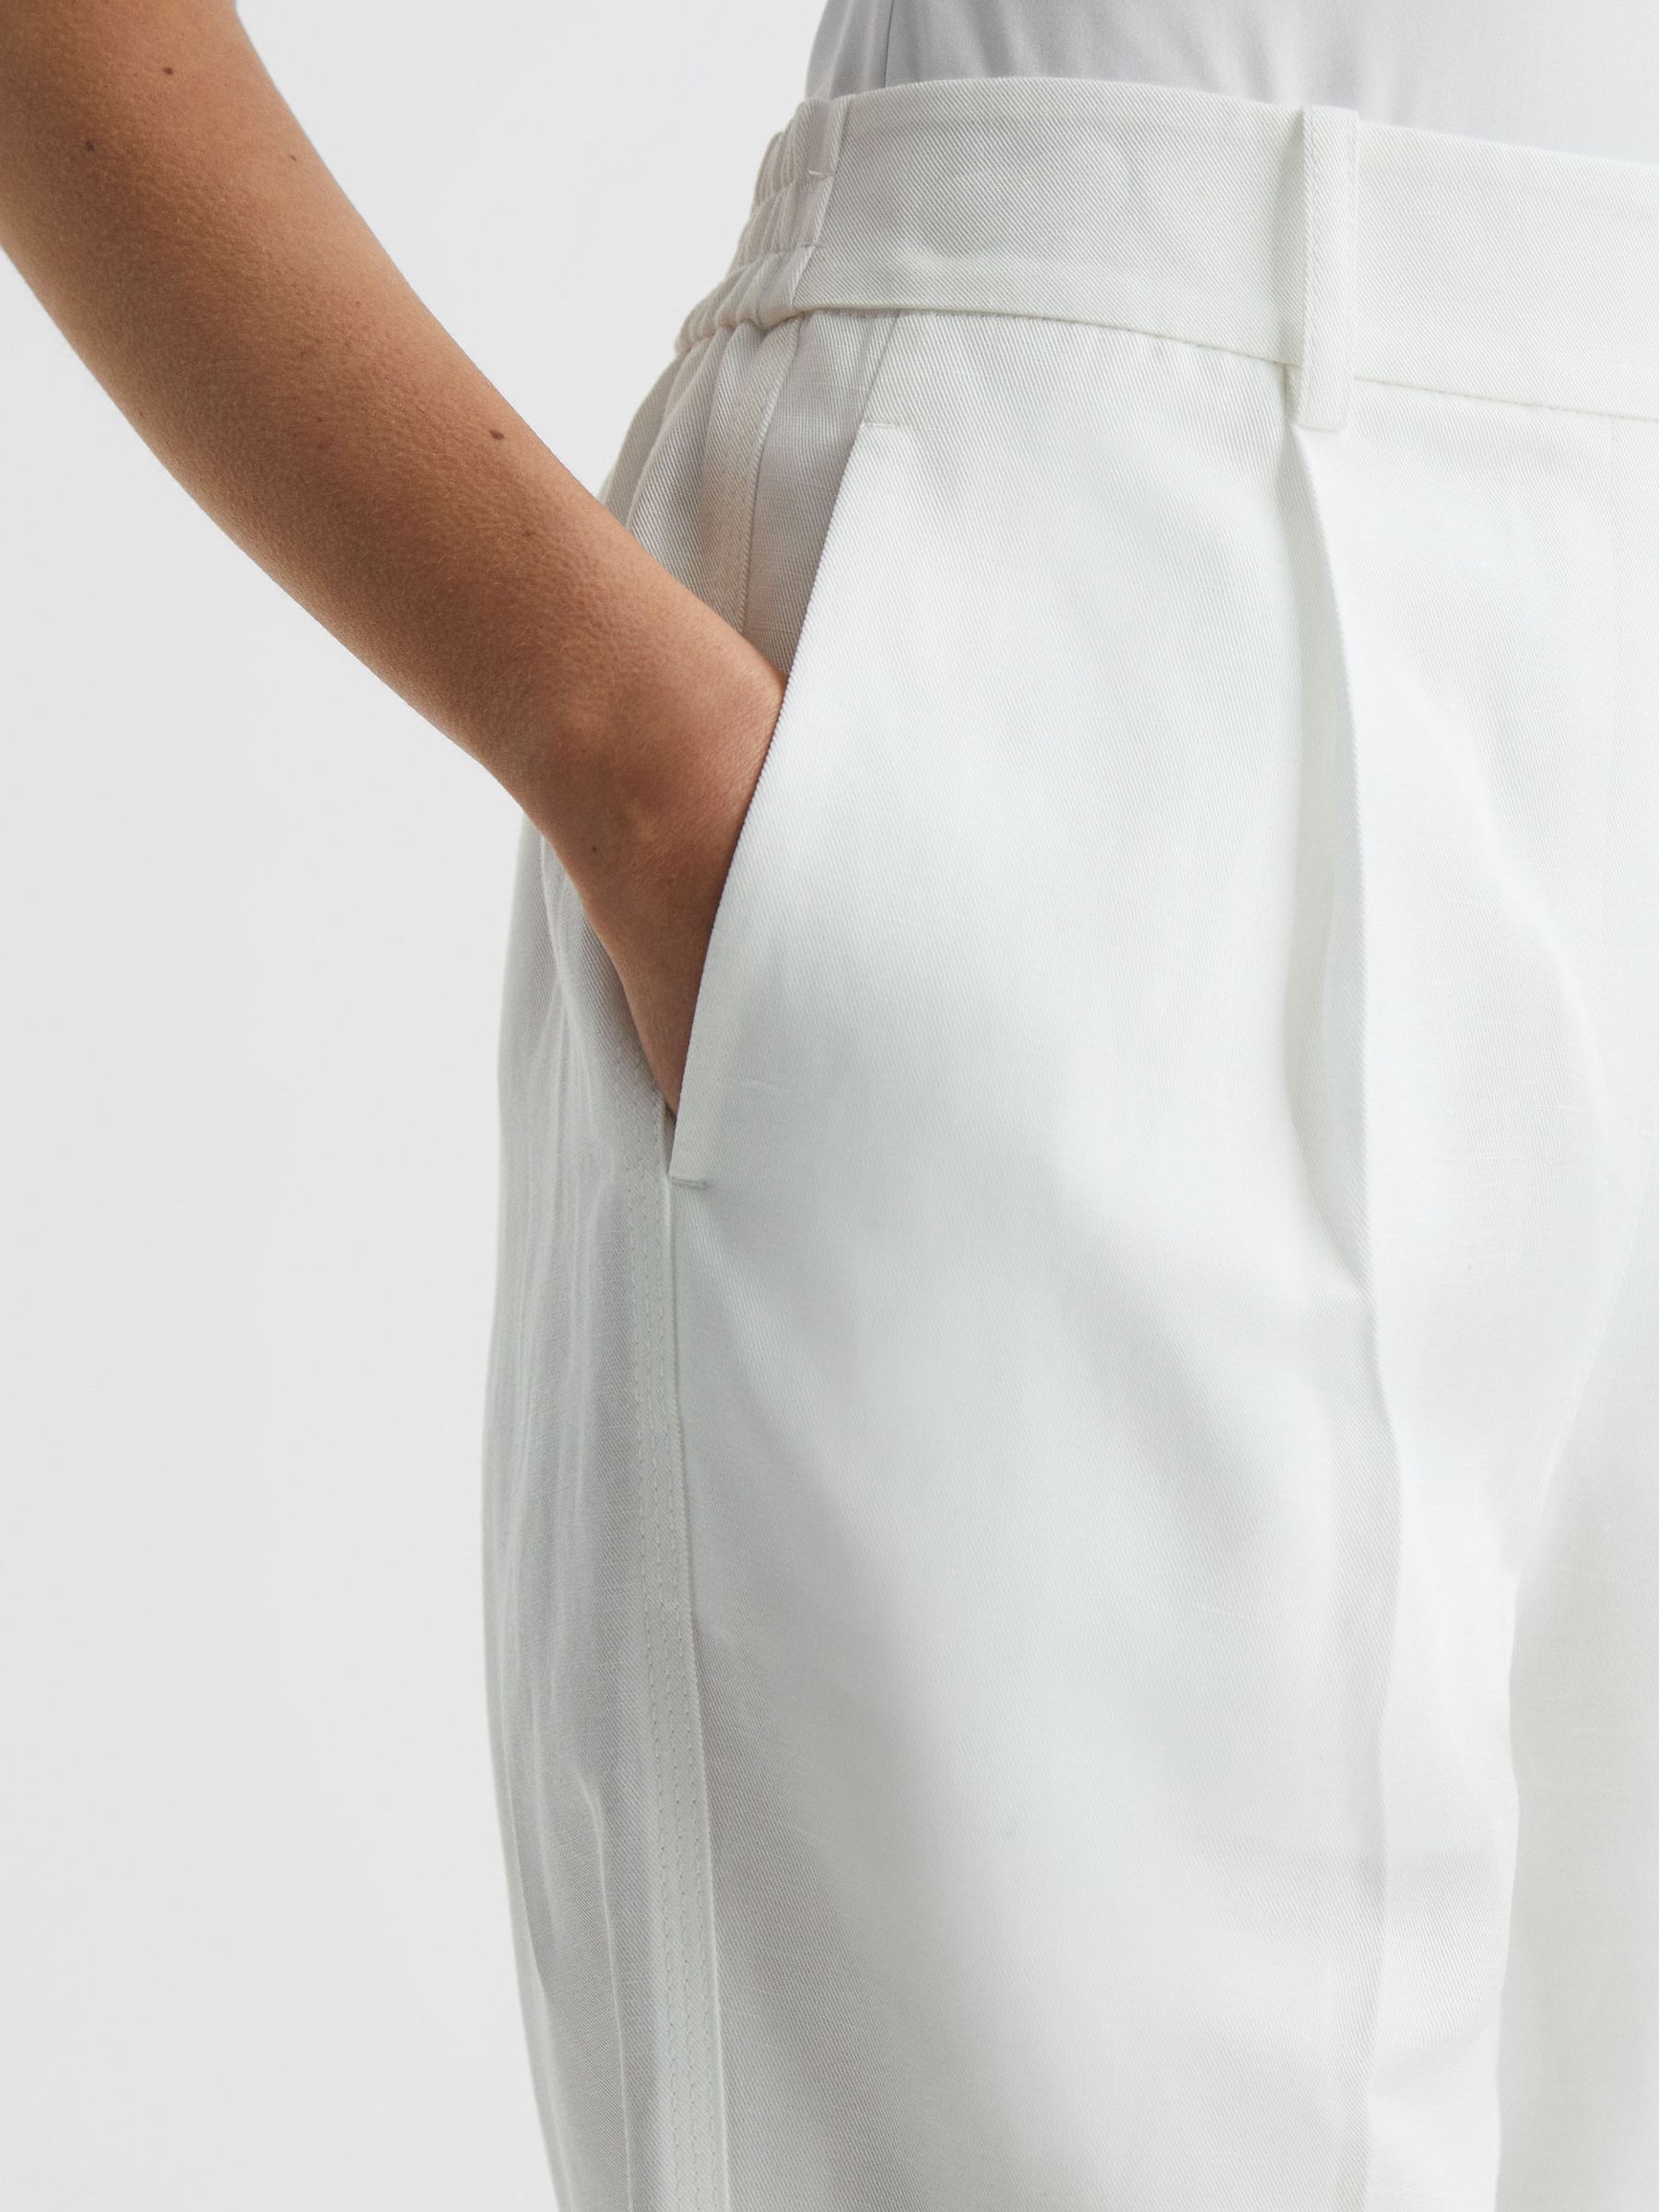 Reiss Shae Tapered Linen Trousers | REISS Australia